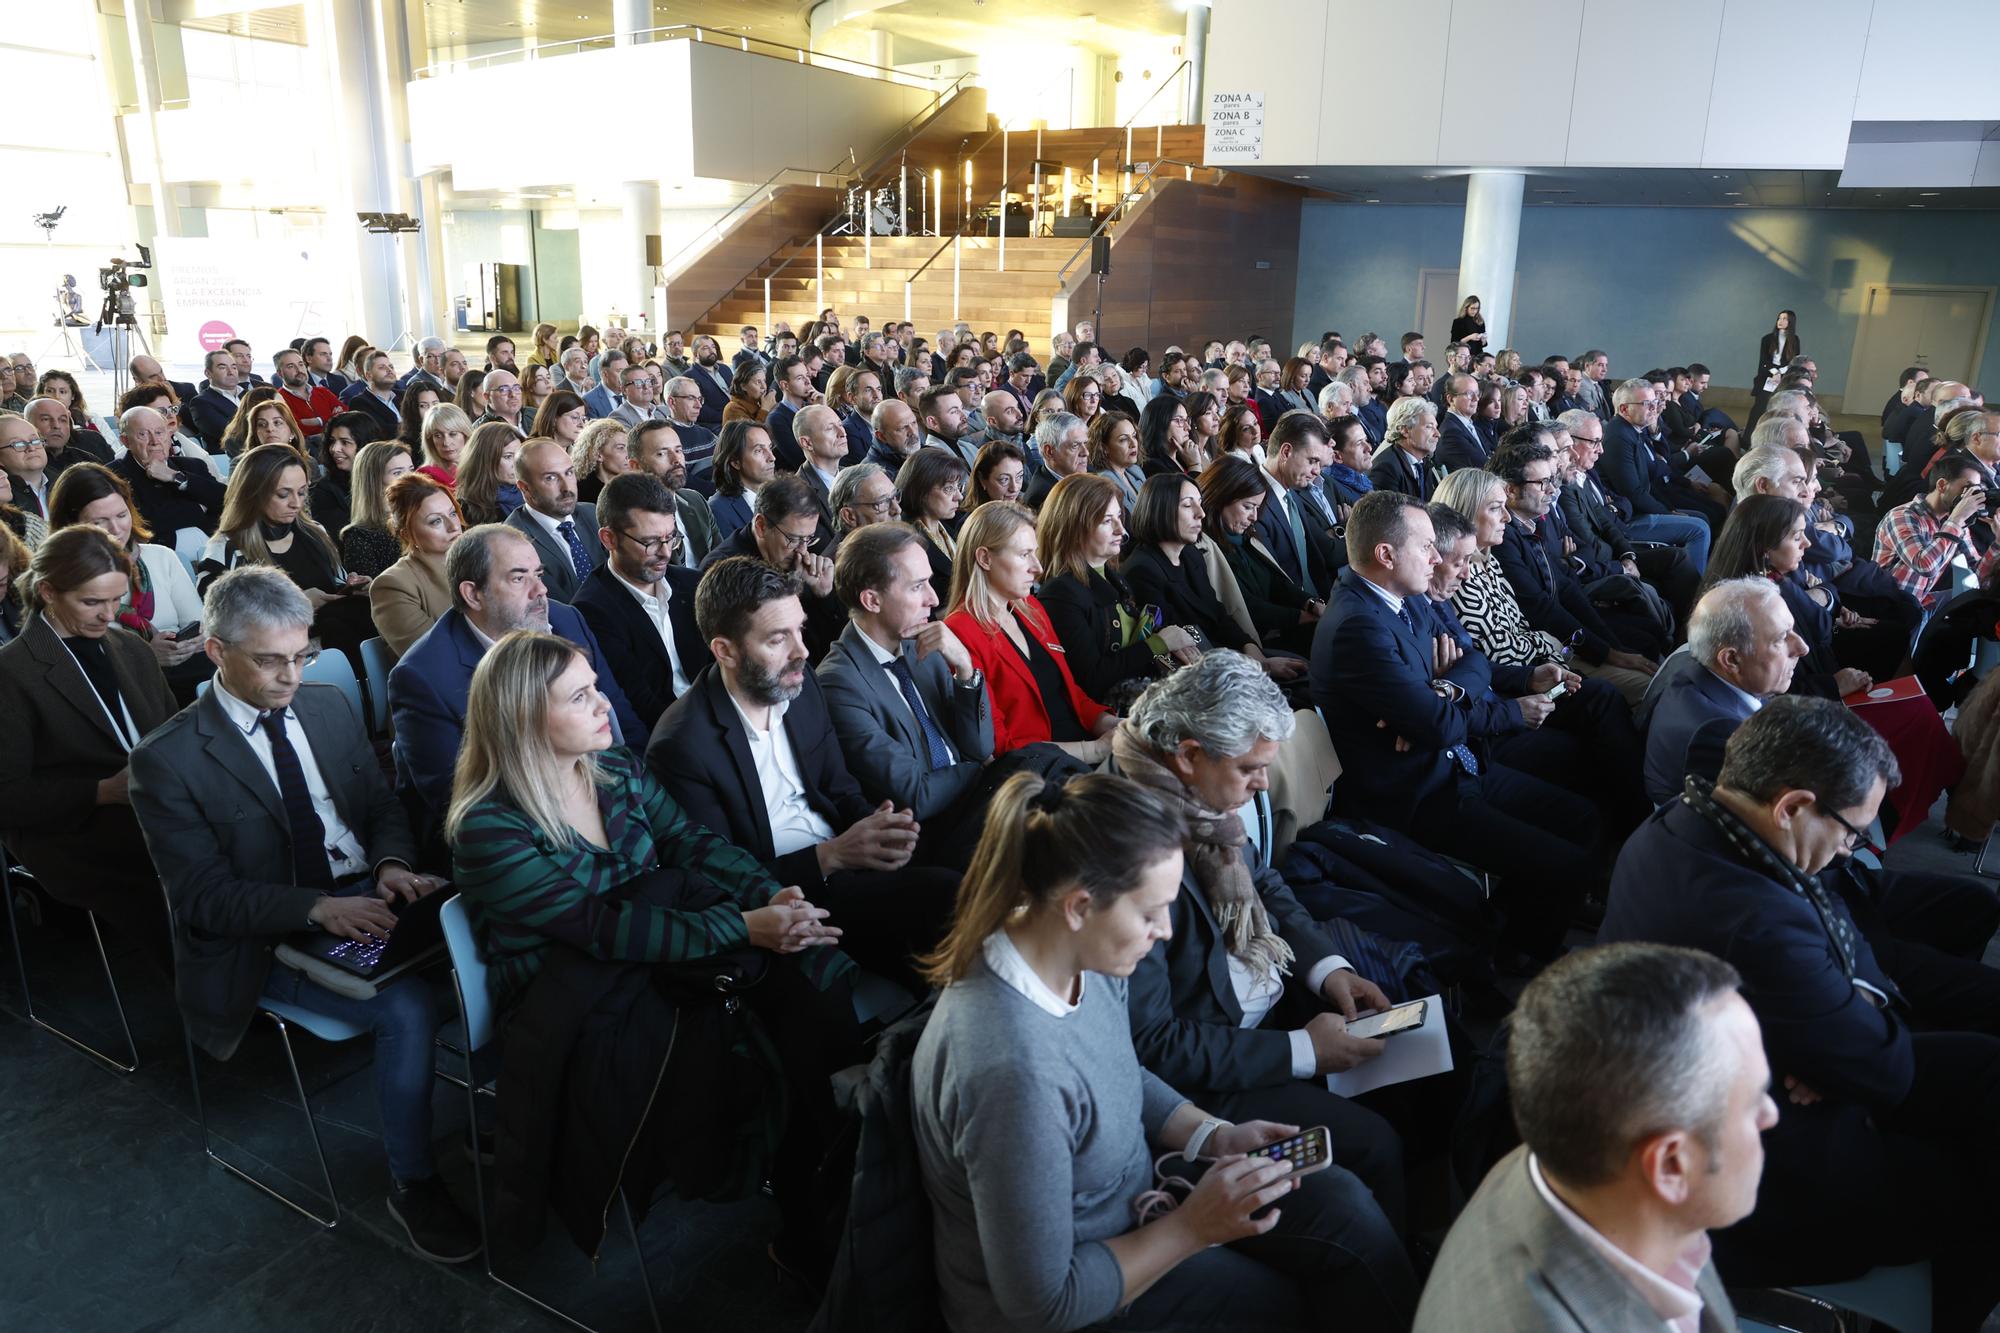 PREMIOS ARDÁN: La gala de la excelencia empresarial gallega, en imágenes